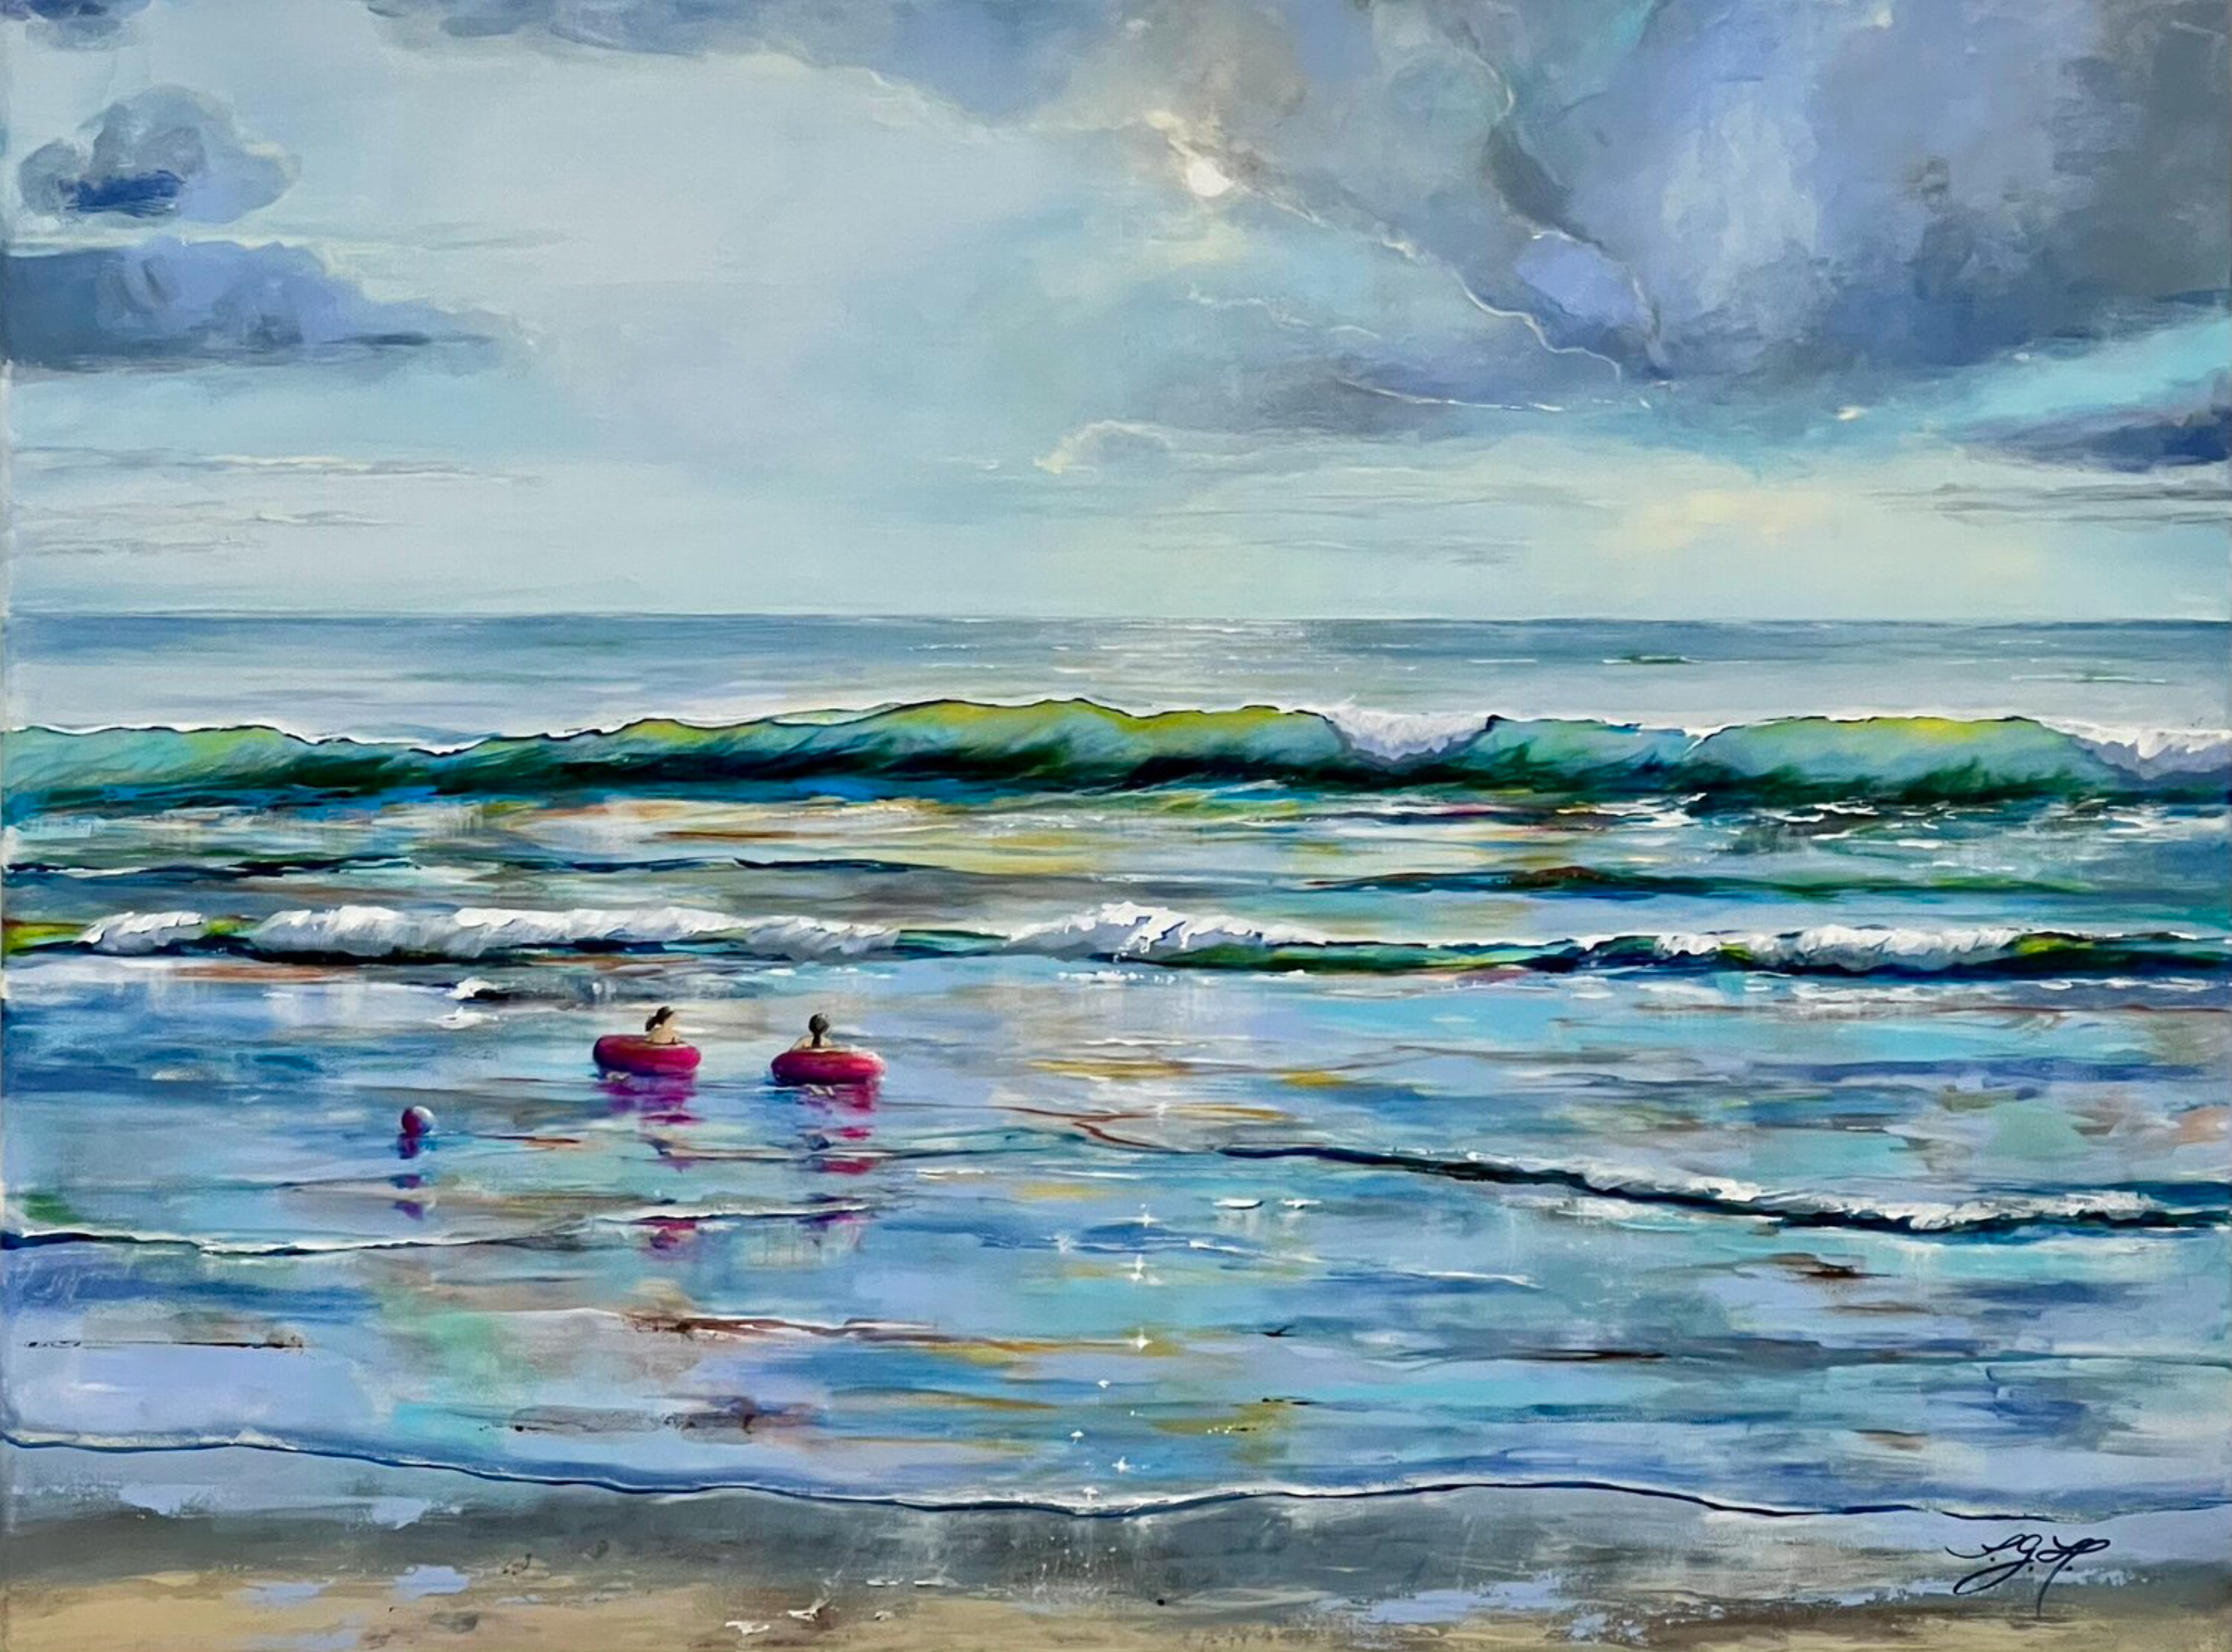 Sandra Gebhardt-Hoepfner的 "夏日时光1 "画作展示了海边的夏日时光。时间静止了，夏天似乎没有尽头。一切都是可能的。孩子们带着他们的粉红色游泳圈漂浮在大海的温柔的波浪上。主要颜色是浅蓝色、白色、浅灰色、绿松石色、深灰色、粉红色、沙棕色。